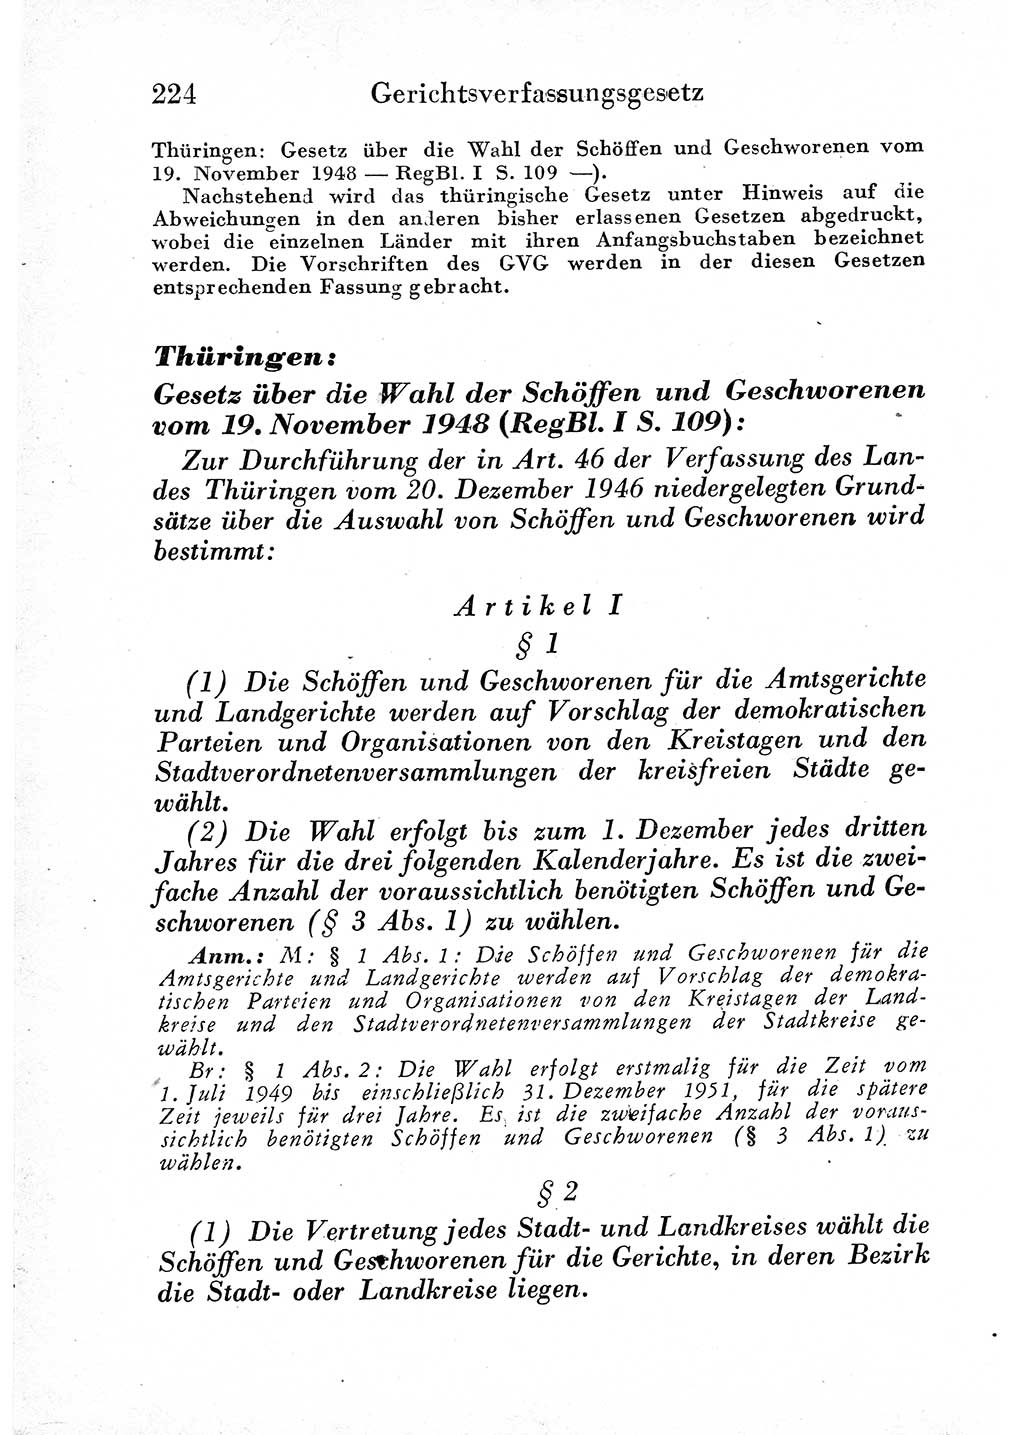 Strafprozeßordnung (StPO), Gerichtsverfassungsgesetz (GVG) und zahlreiche Nebengesetze der sowjetischen Besatzungszone (SBZ) in Deutschland 1949, Seite 224 (StPO GVG Ges. SBZ Dtl. 1949, S. 224)